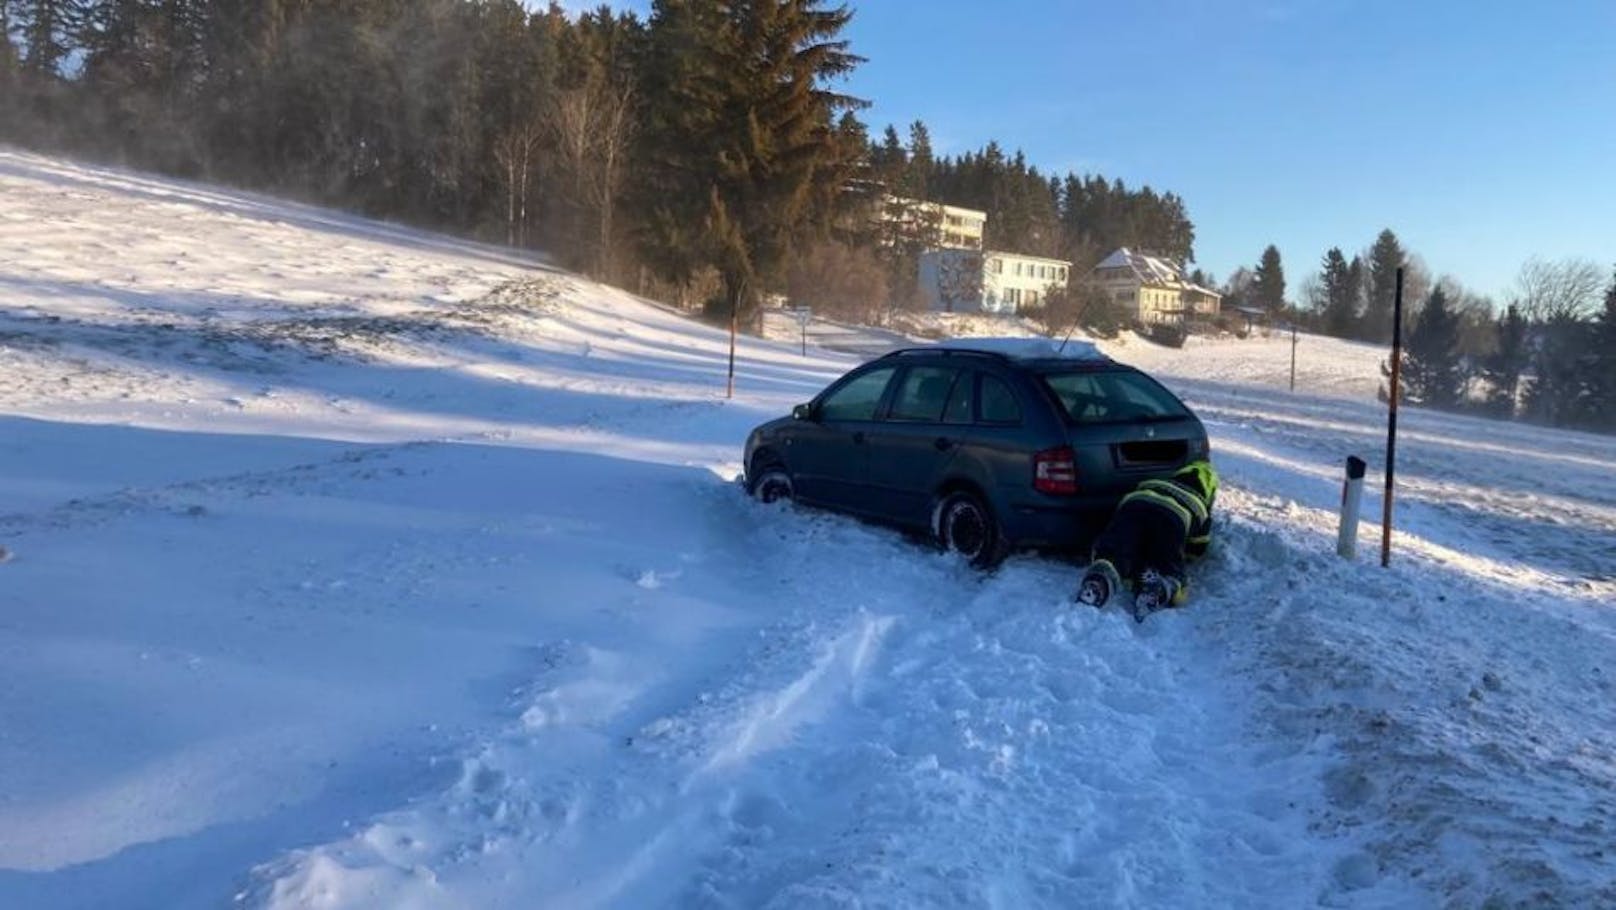 Ein heftiger Schneesturm ließ am Wochenende zahlreiche Fahrzeuge stecken bleiben. Die Freiwillige Feuerwehr St. Radegund bei Graz musste zu zahlreichen Bergeeinsätzen ausrücken. (12. Dezember 2021)